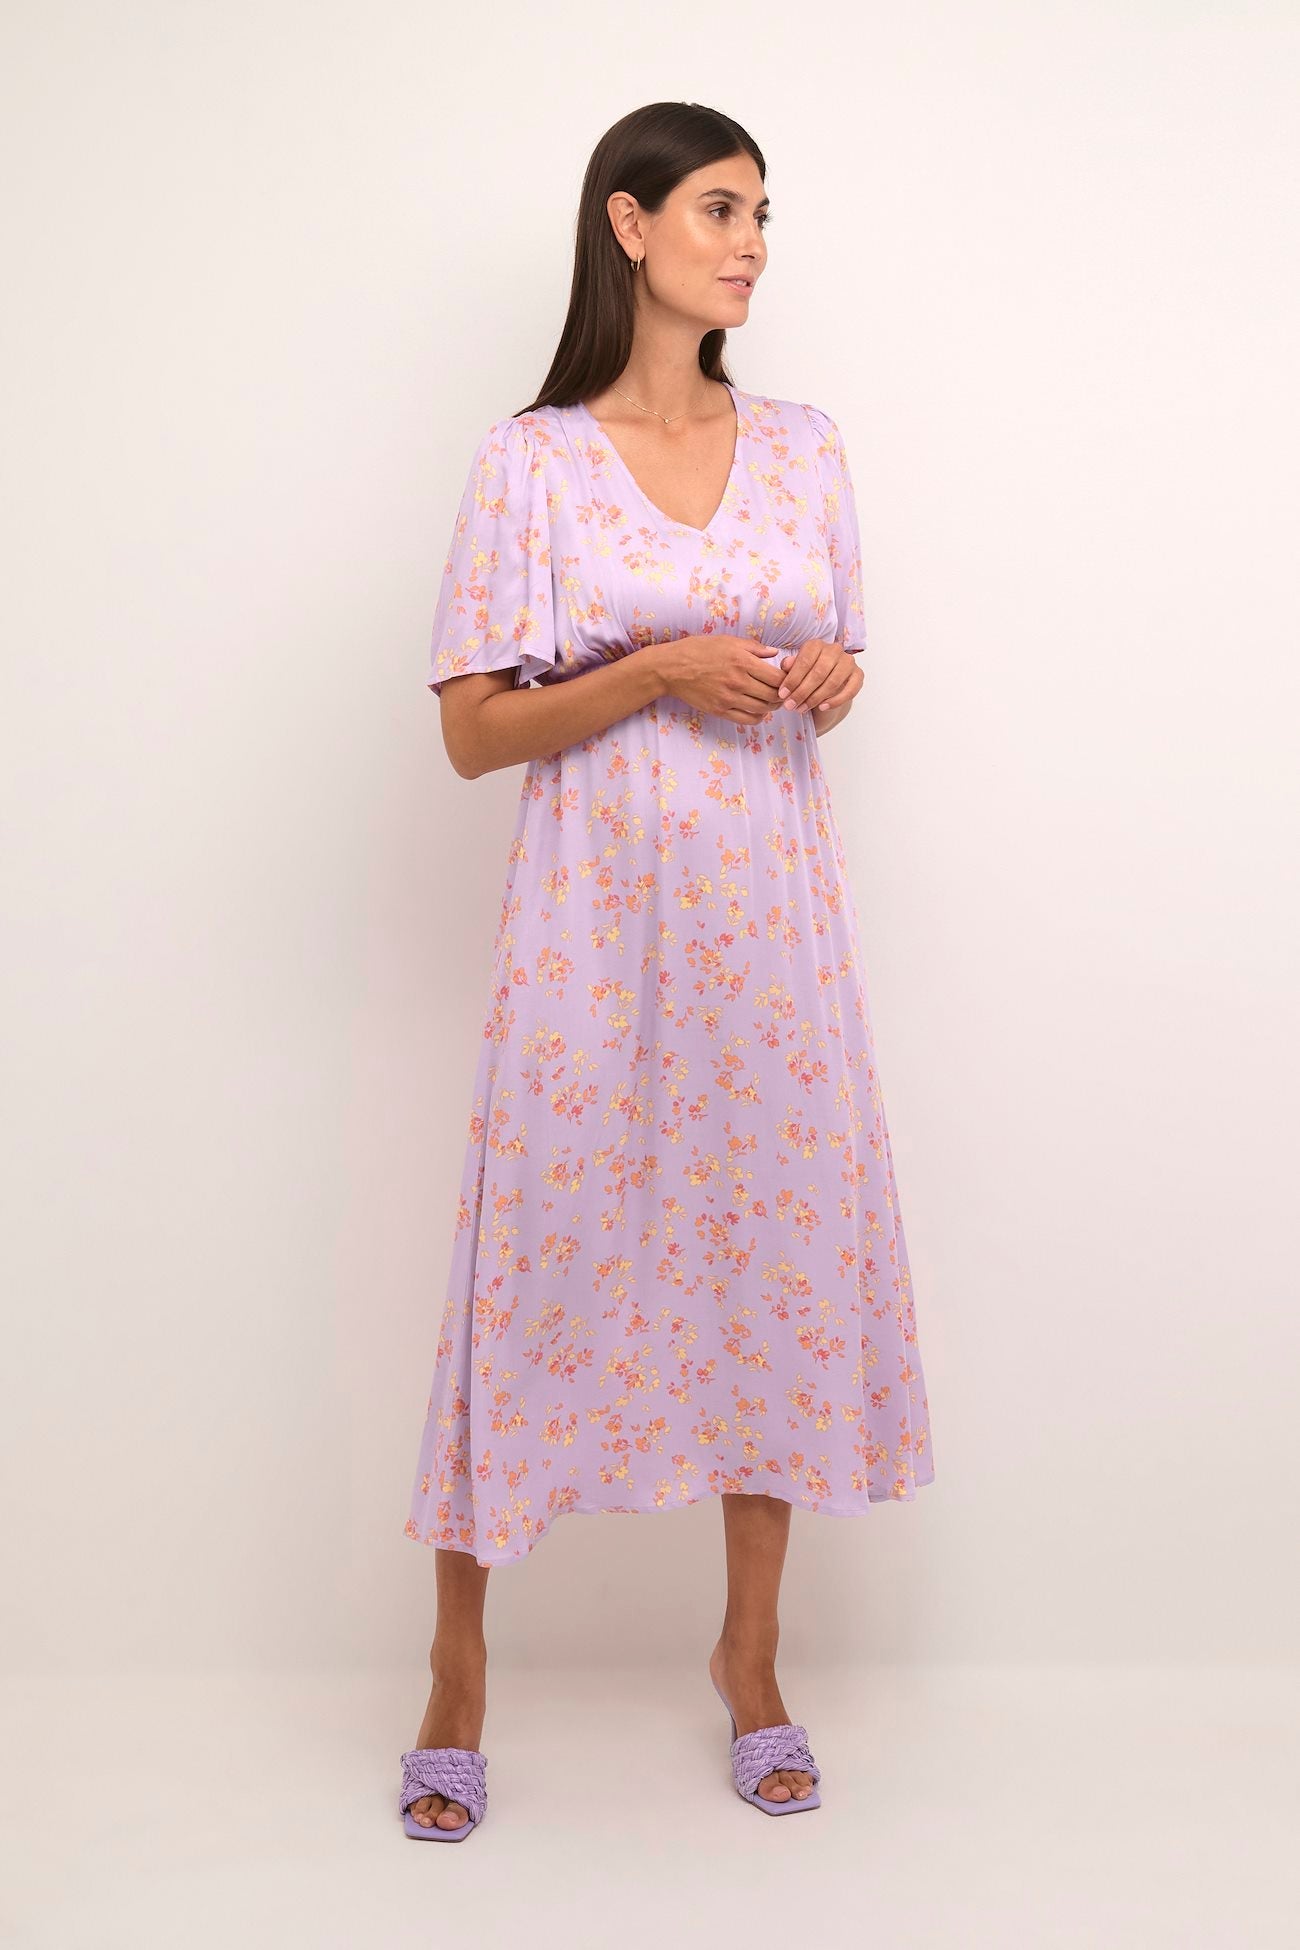 BILLIE DRESS by Culture - Lavender Floral - Blue Sky Fashions & Lingerie